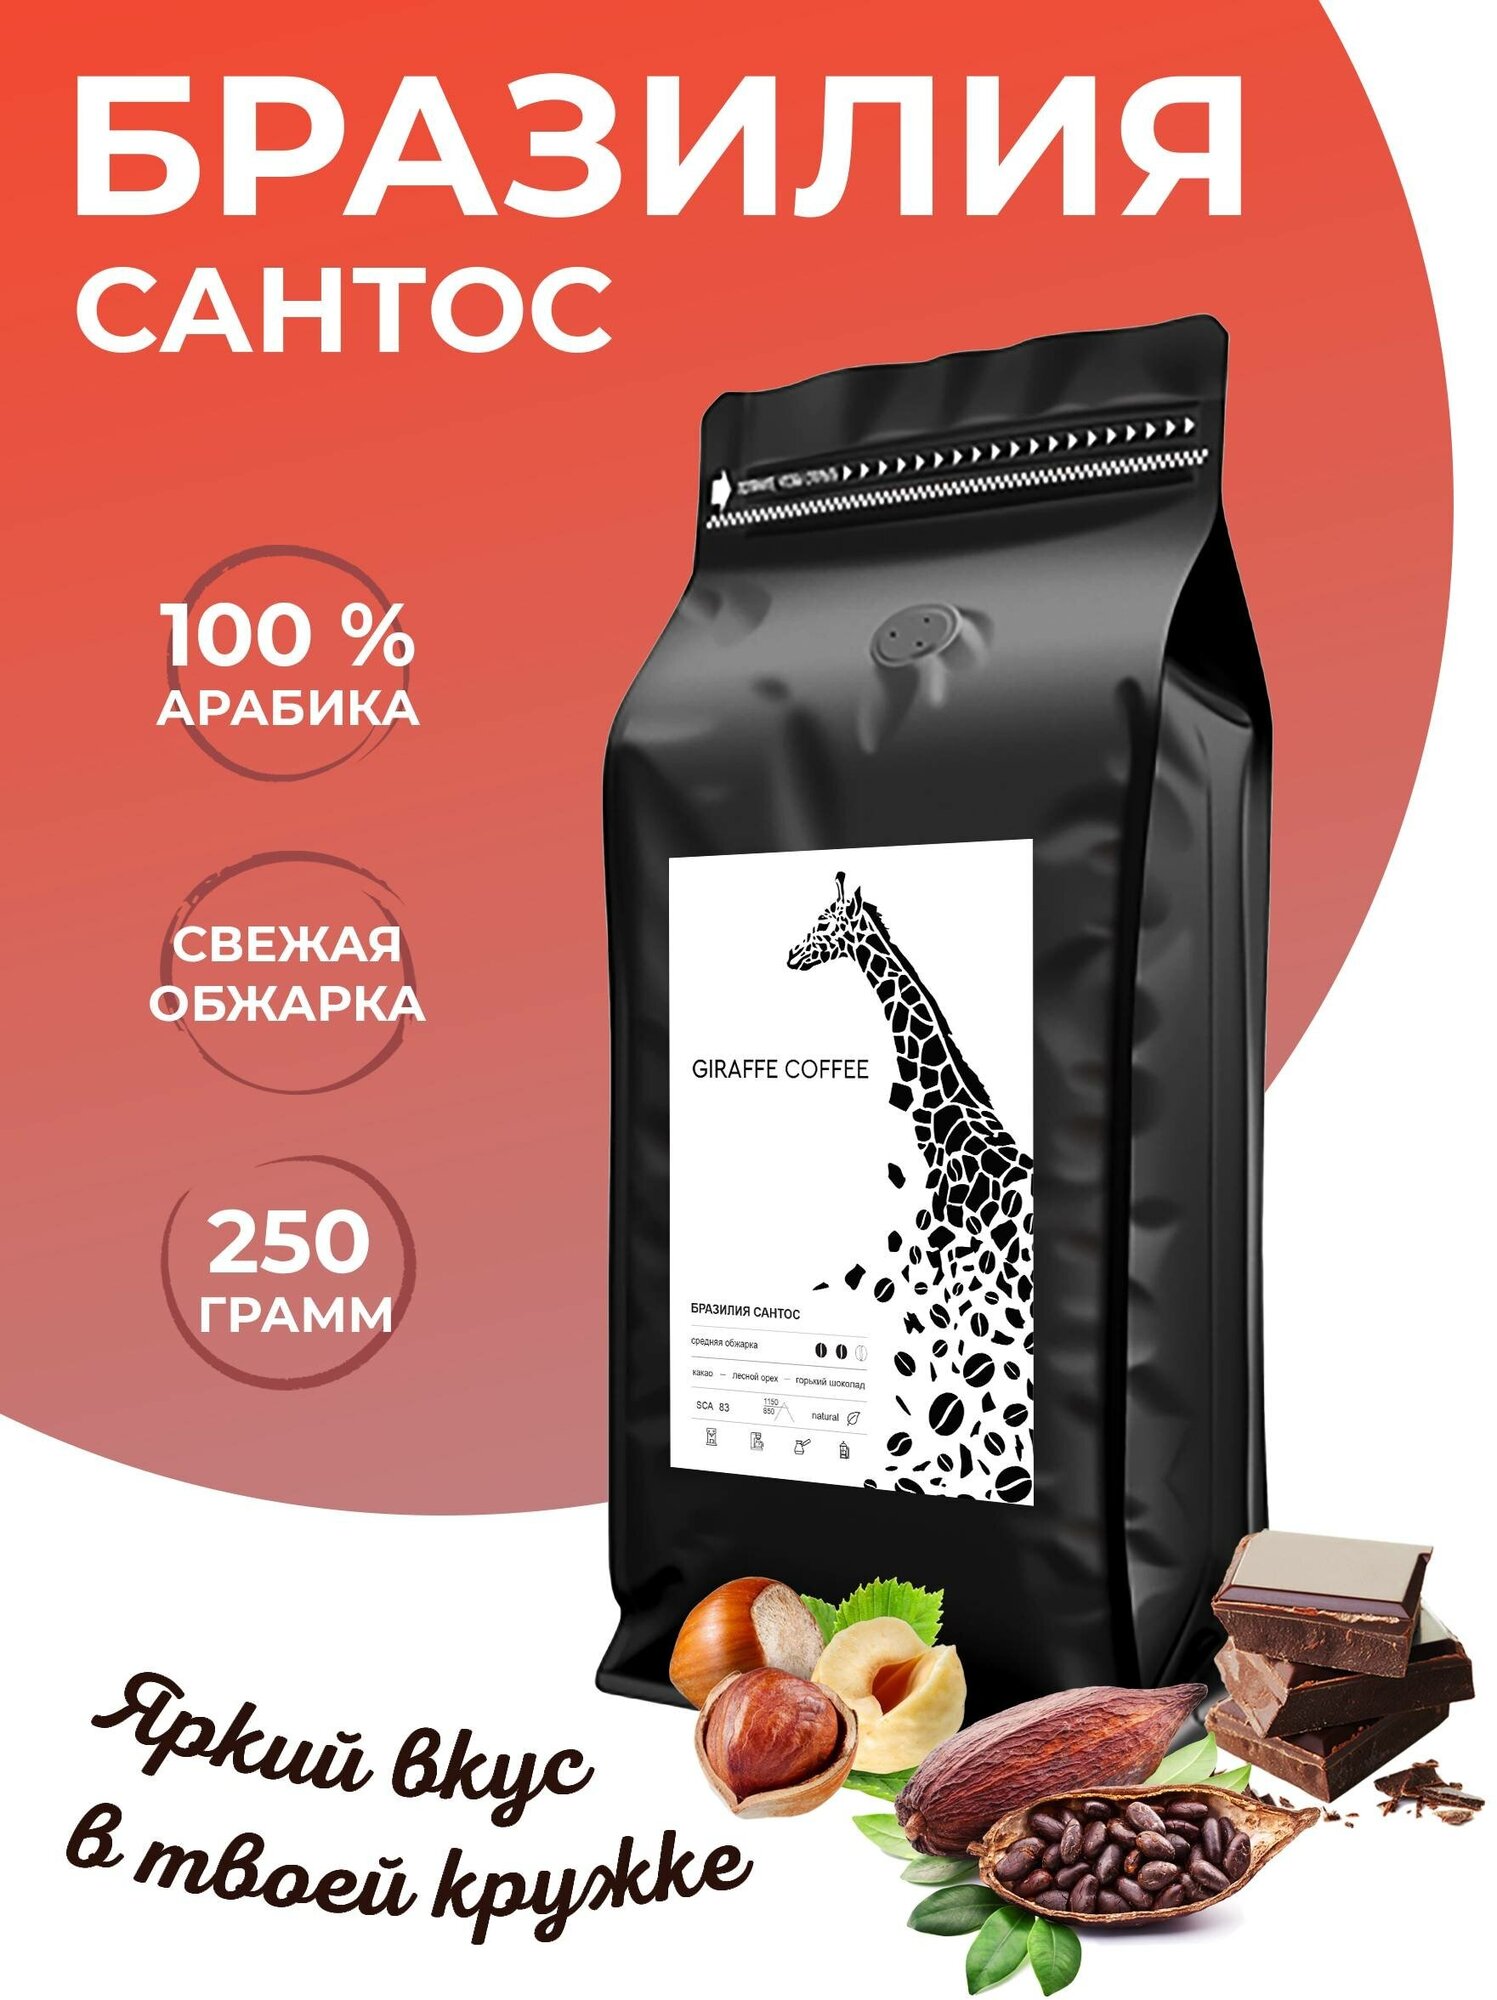 Кофе в зернах 250 грамм Giraffe Coffee Бразилия Сантос Арабика 100%, натуральный зерновой кофе, свежеобжаренный, кофе для кофемашины